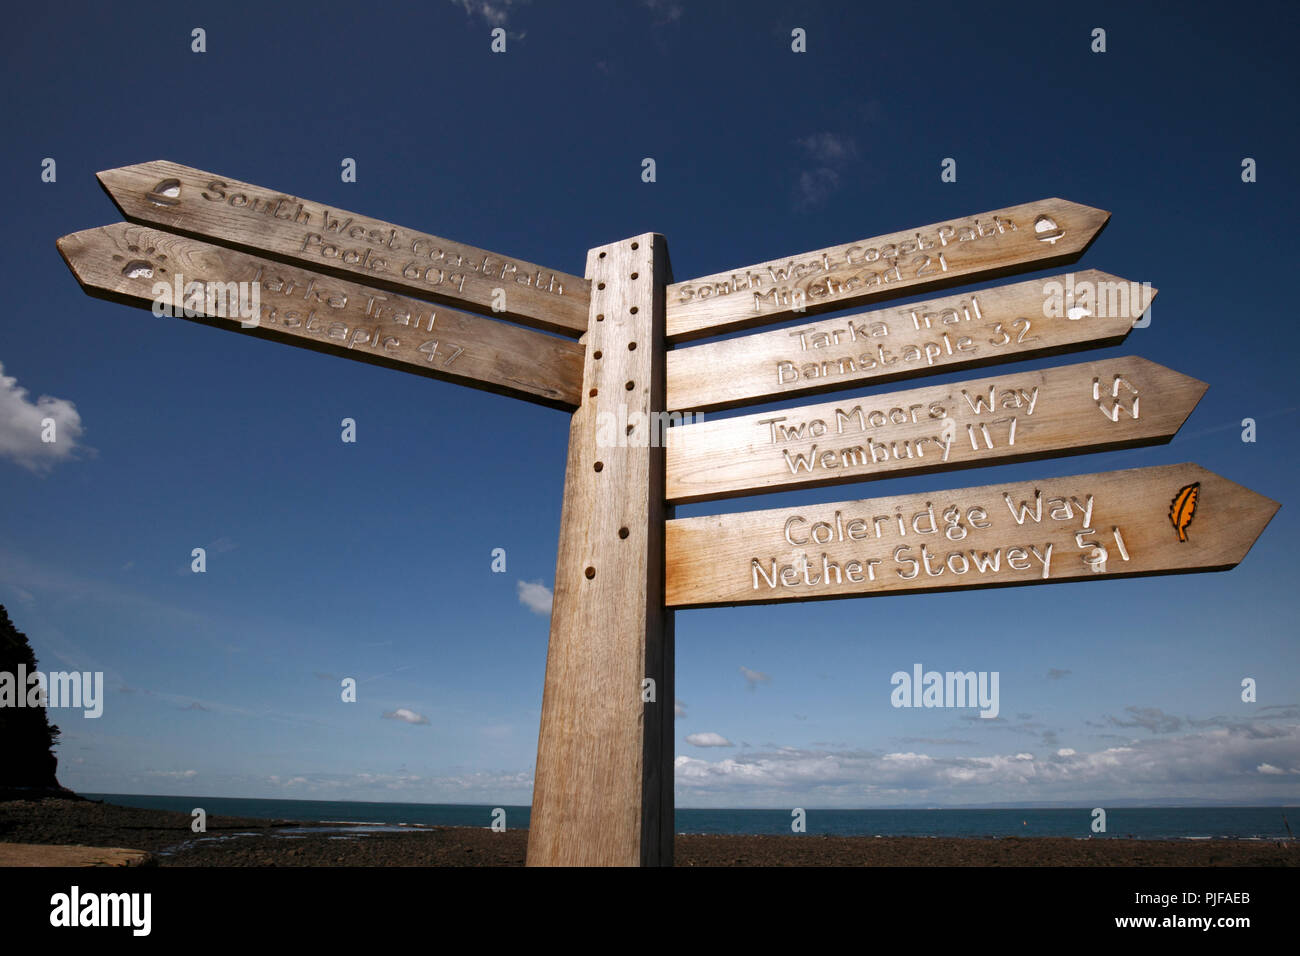 Zeichen zeigen die verschiedenen Wanderungen und Kilometerstand von Lynmouth, North Devon. Tarka Trail, South West Coastal Path, zwei Mauren weg, Coleridge weg. Stockfoto